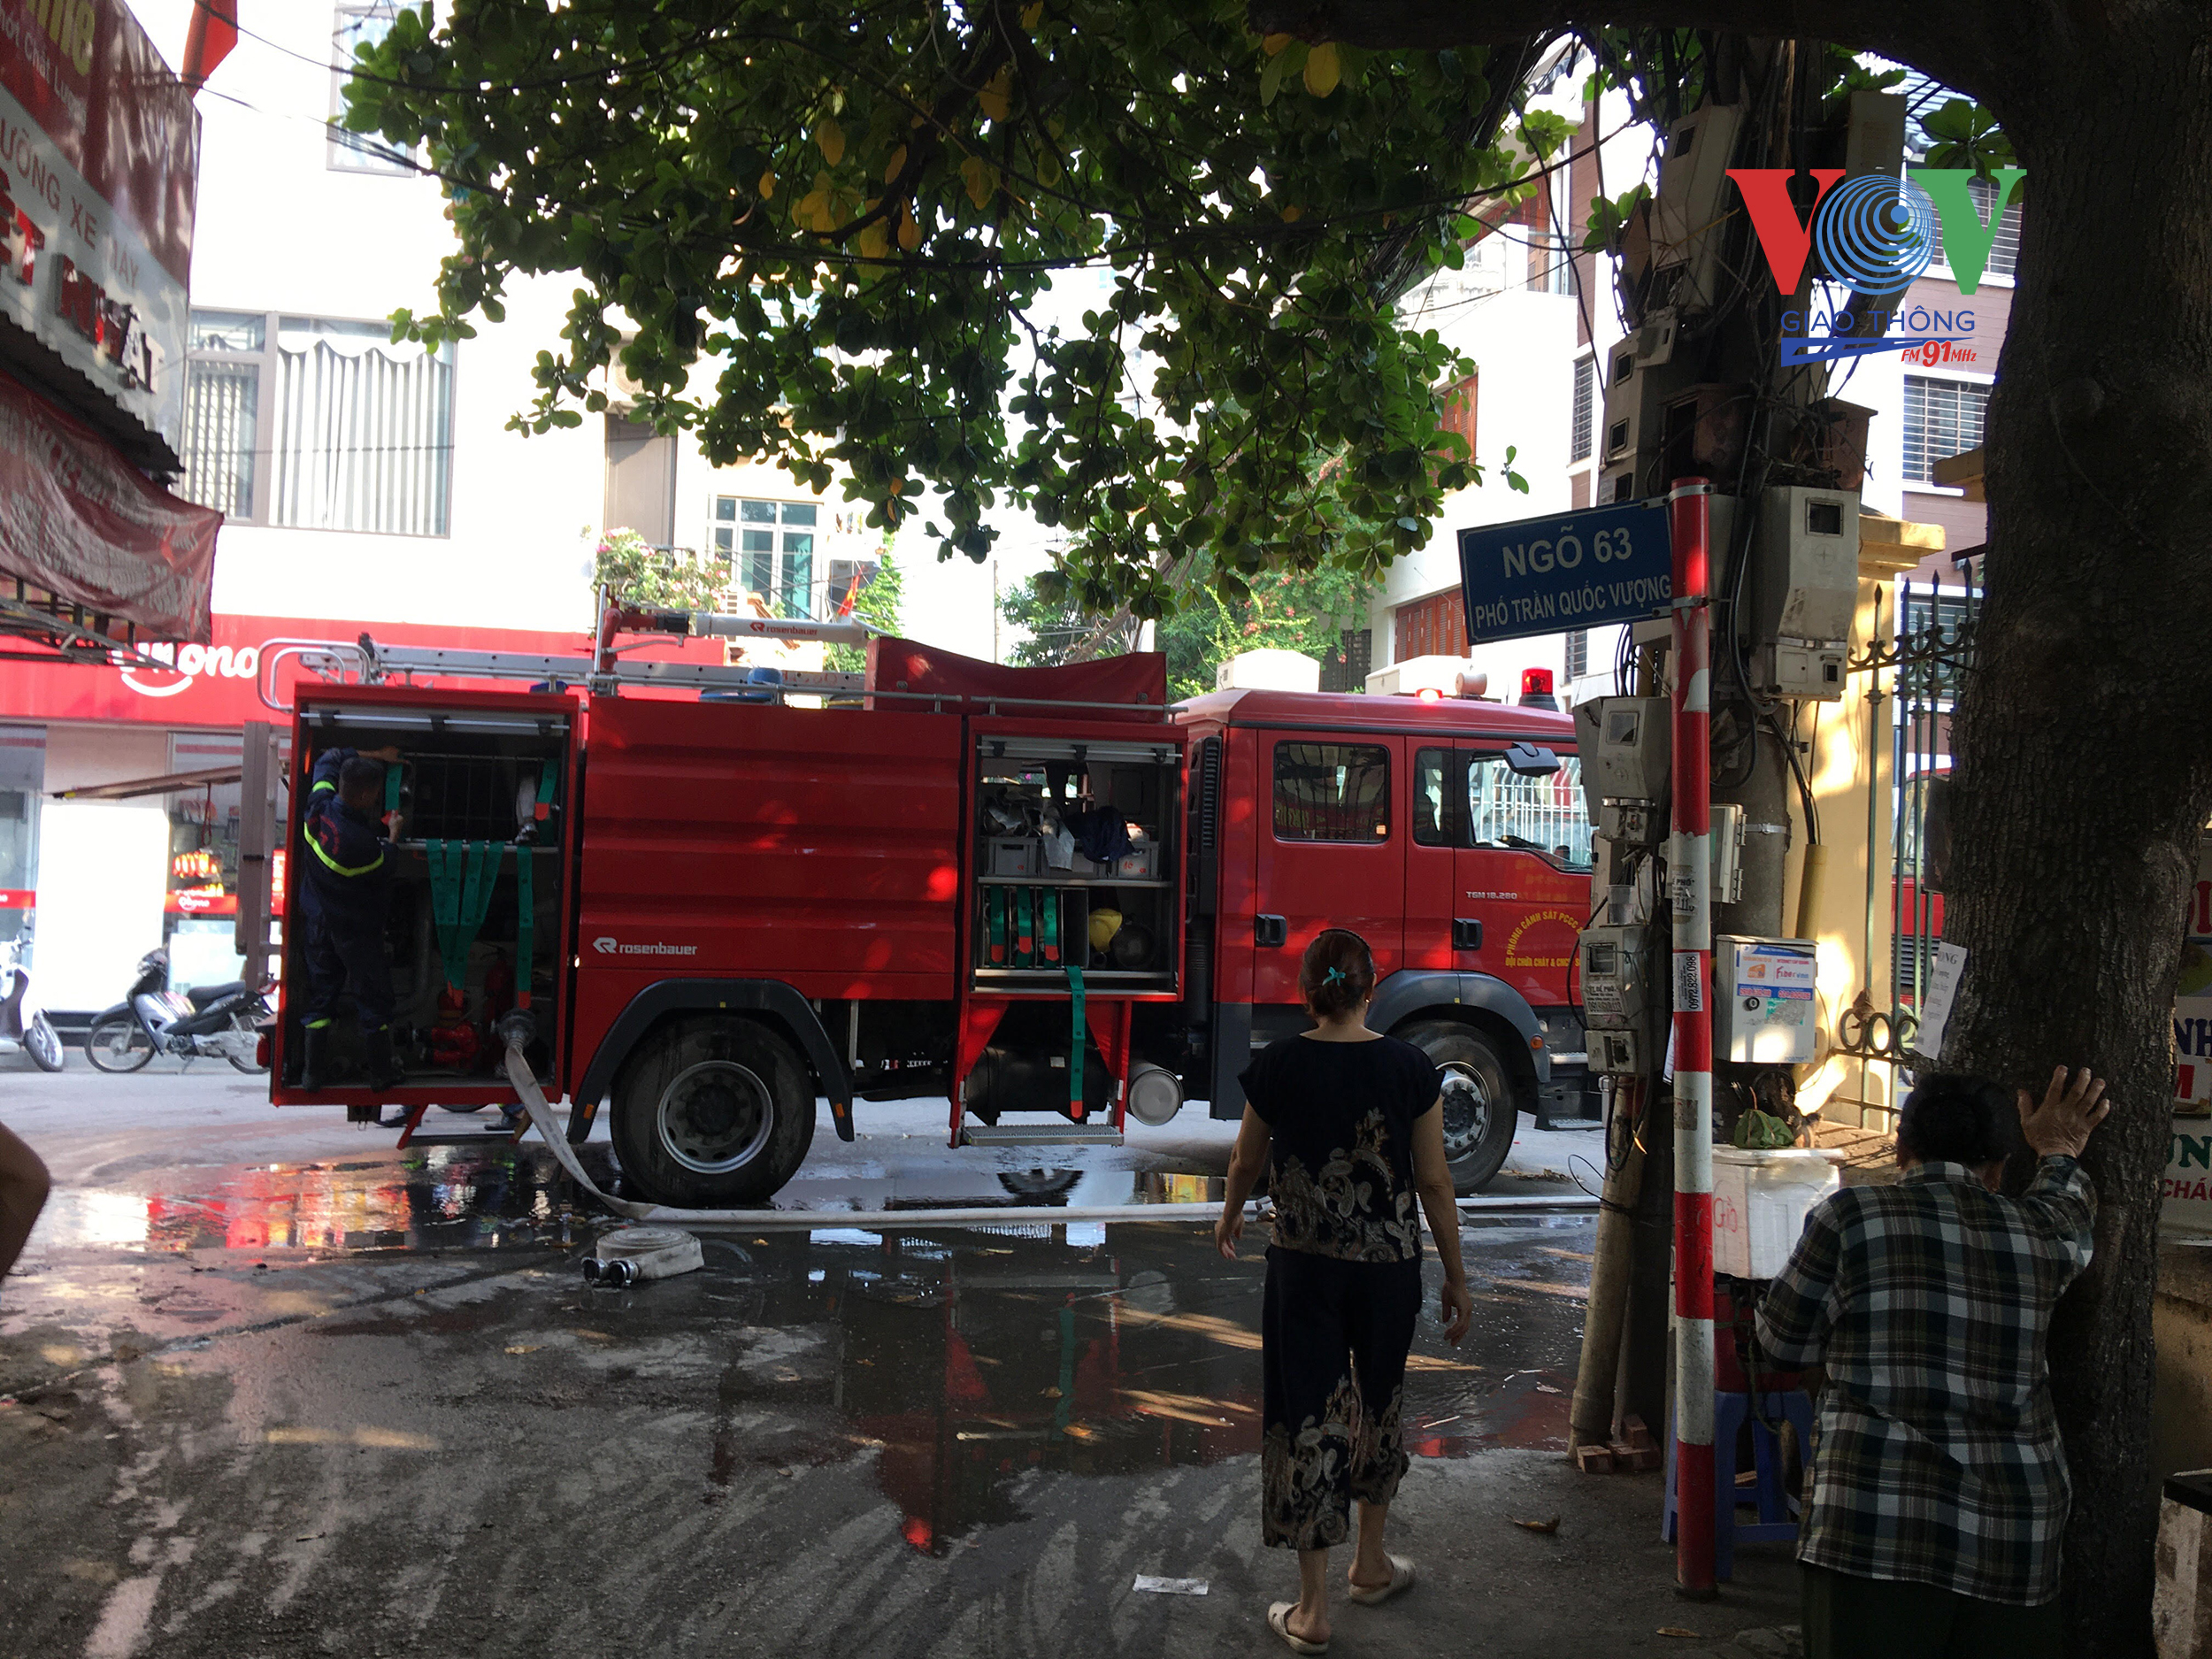 Xe cứu hỏa phải đặt xa hiện trường nên công tác chữa cháy gặp nhiều khó khăn